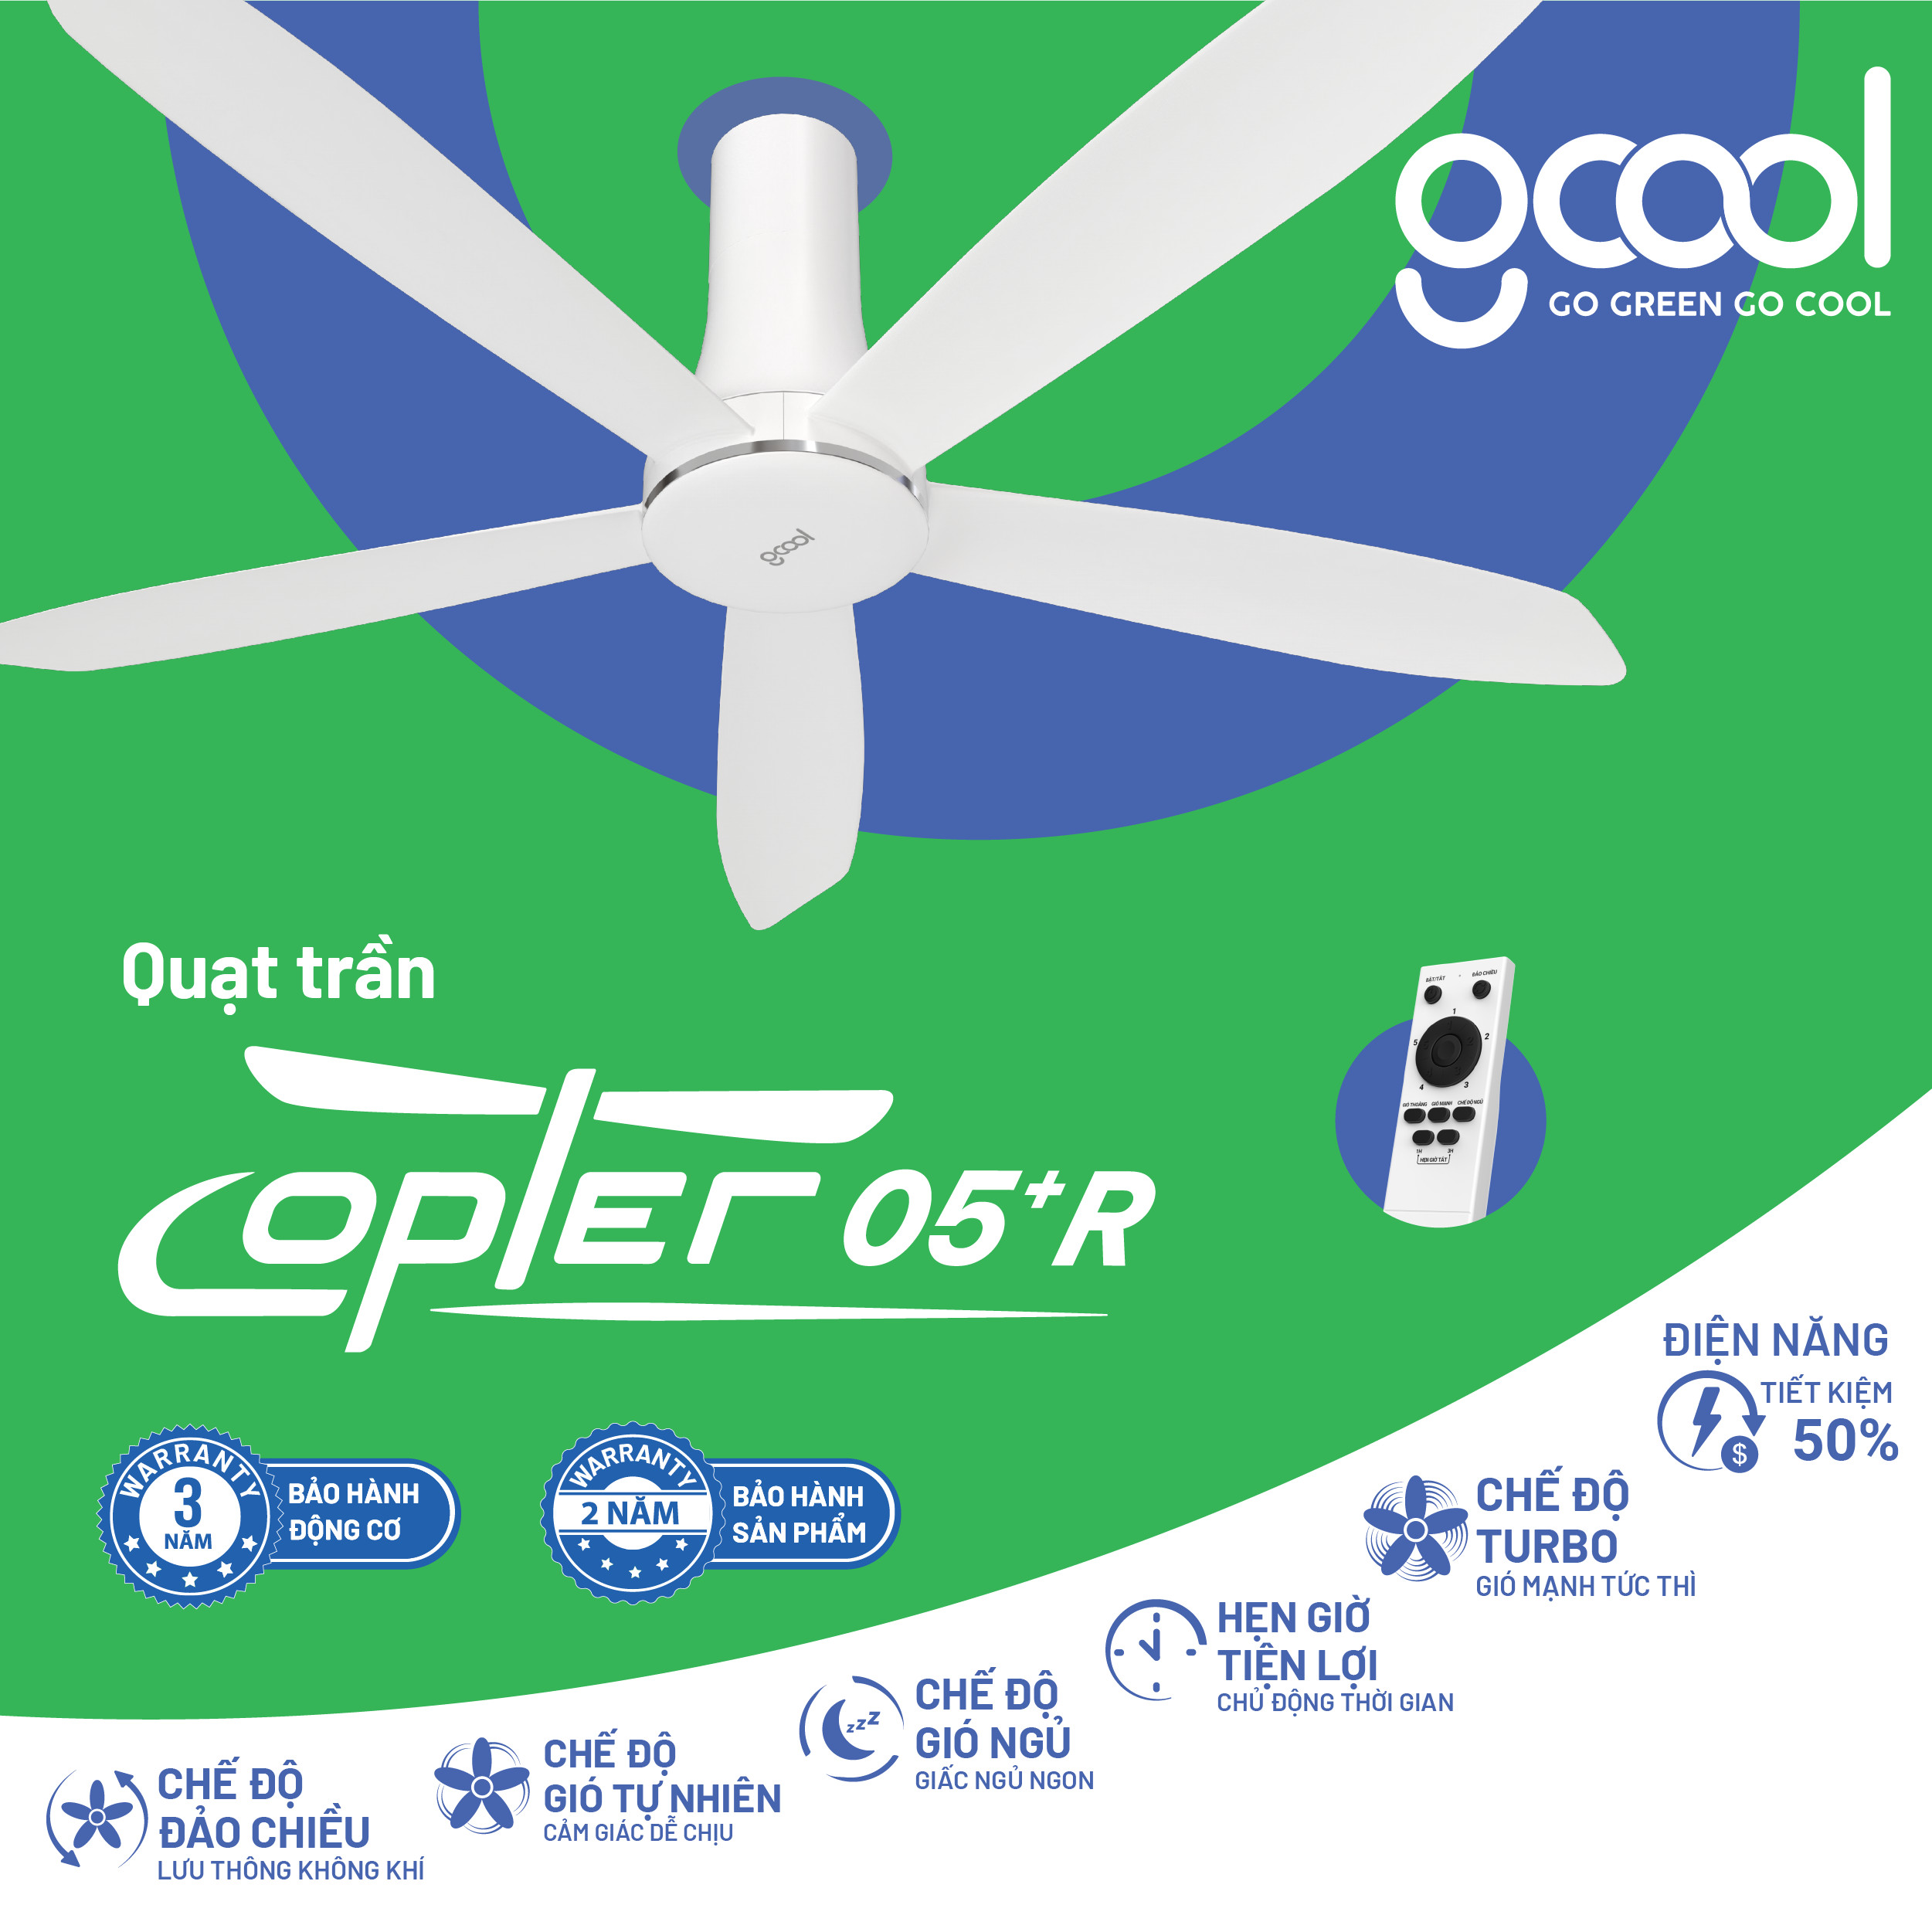 Hình ảnh Quạt trần GCool Go Green Go Cool hiệu suất cao Smart DC Copter 05 Plus R - Hàng chính hãng